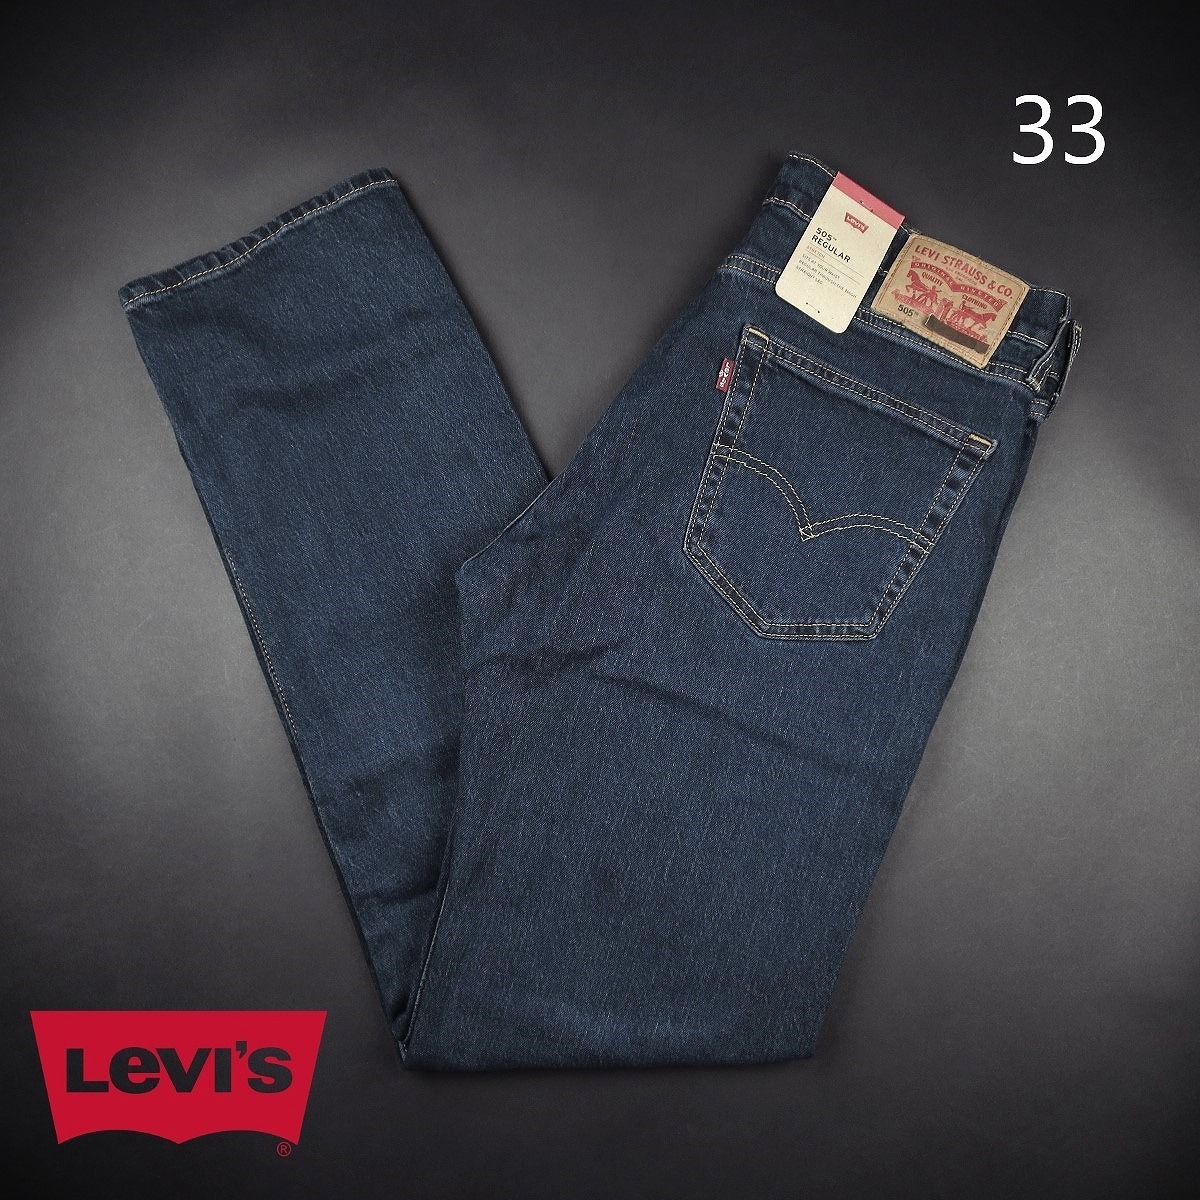  новый товар *Levi*s/ Levi's /505 постоянный Fit 80s90s стиль Denim 406/[33]